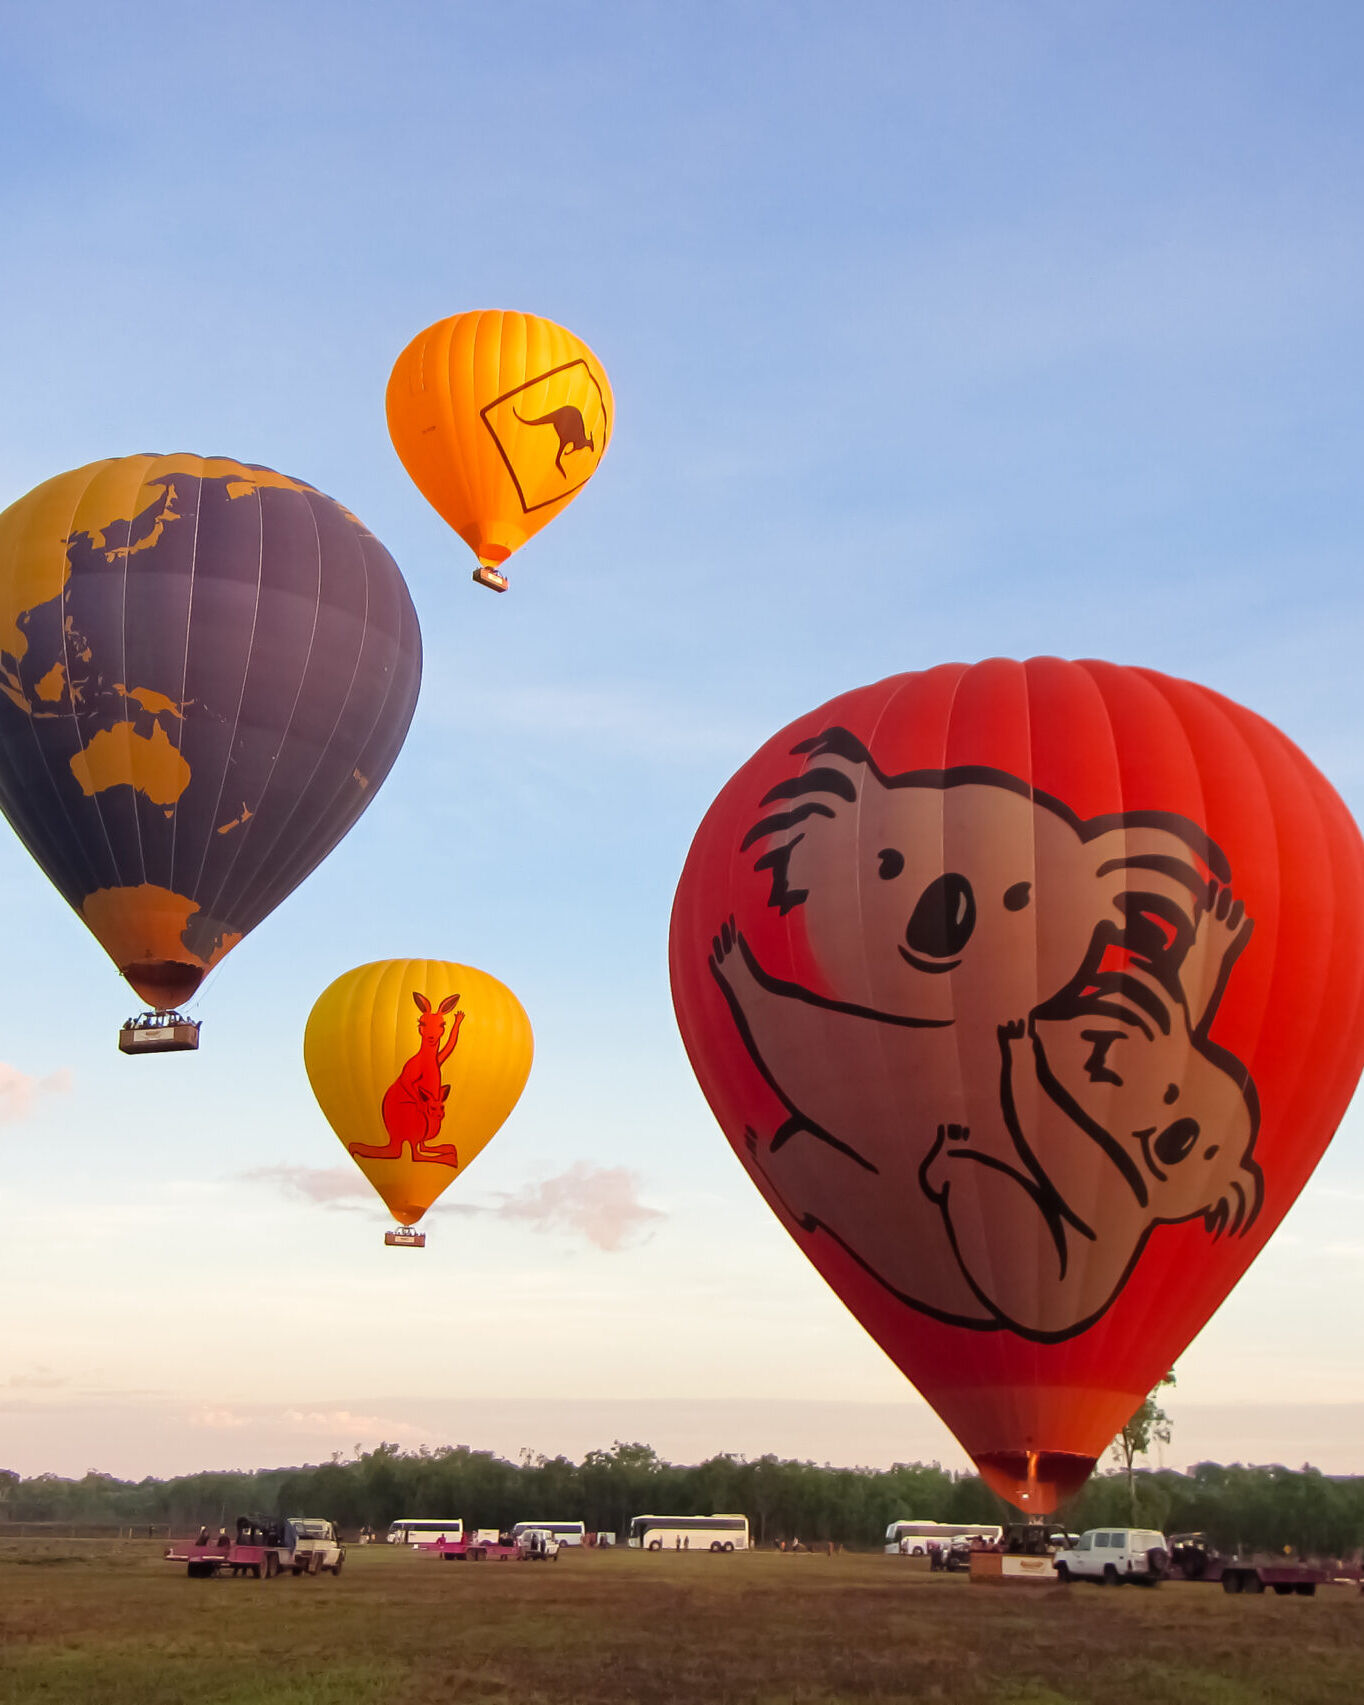 熱気球遊覧飛行ツアー 早朝の幻想的な空の旅